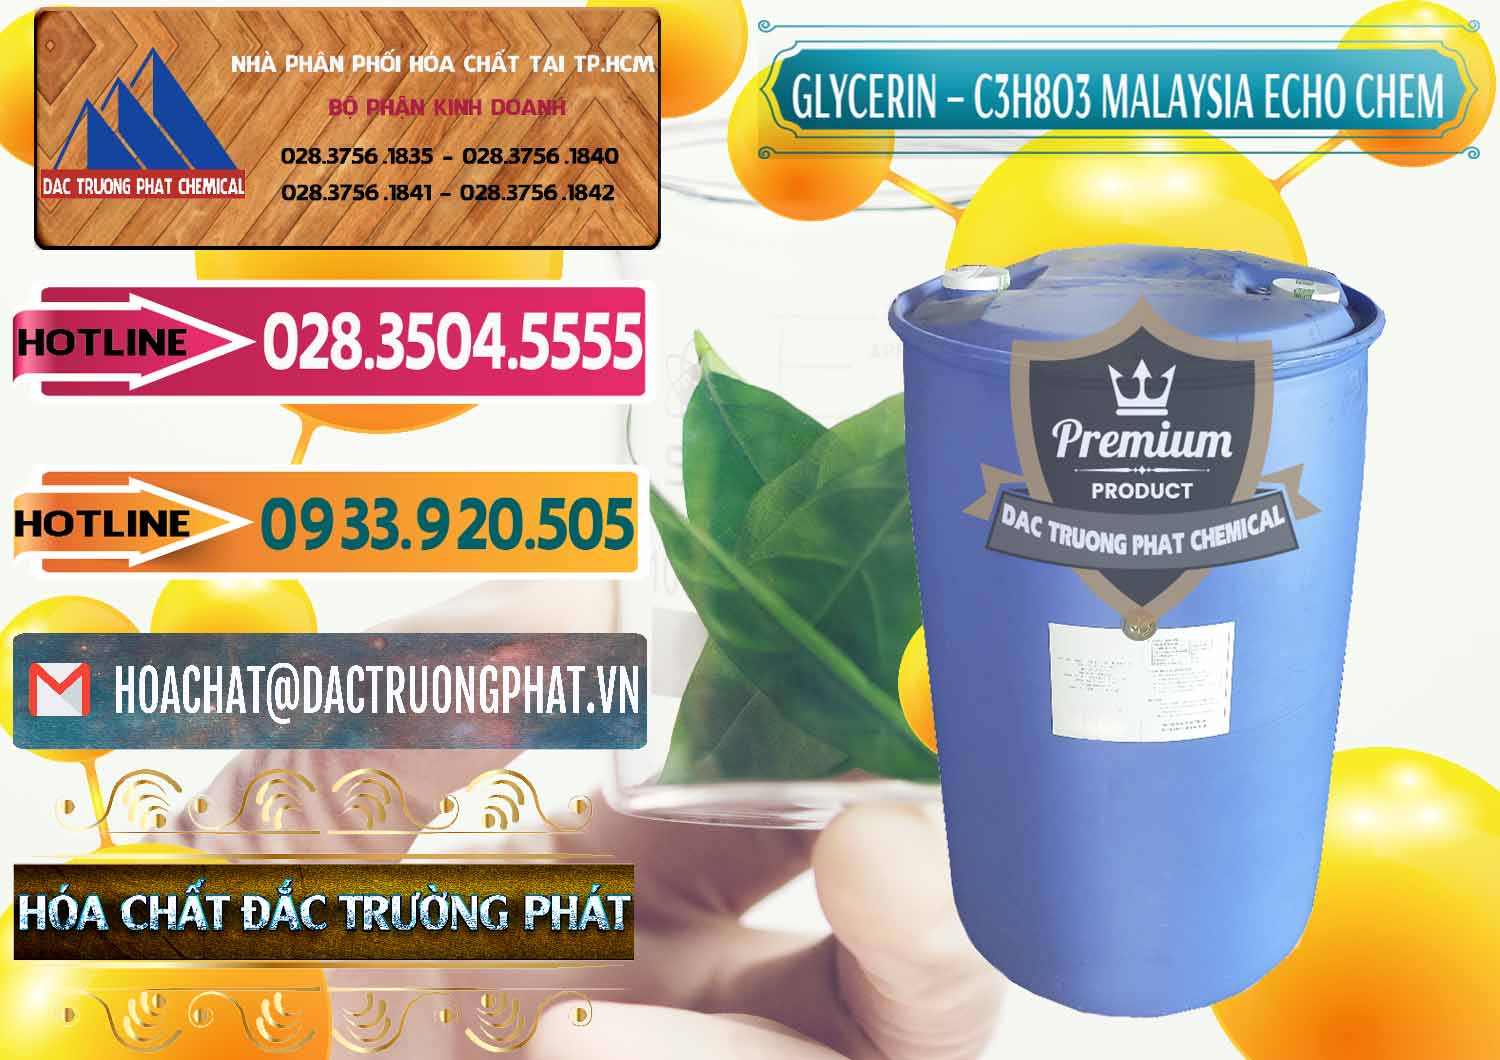 Đơn vị chuyên bán - cung cấp Glycerin – C3H8O3 99.7% Echo Chem Malaysia - 0273 - Cung ứng - phân phối hóa chất tại TP.HCM - dactruongphat.vn